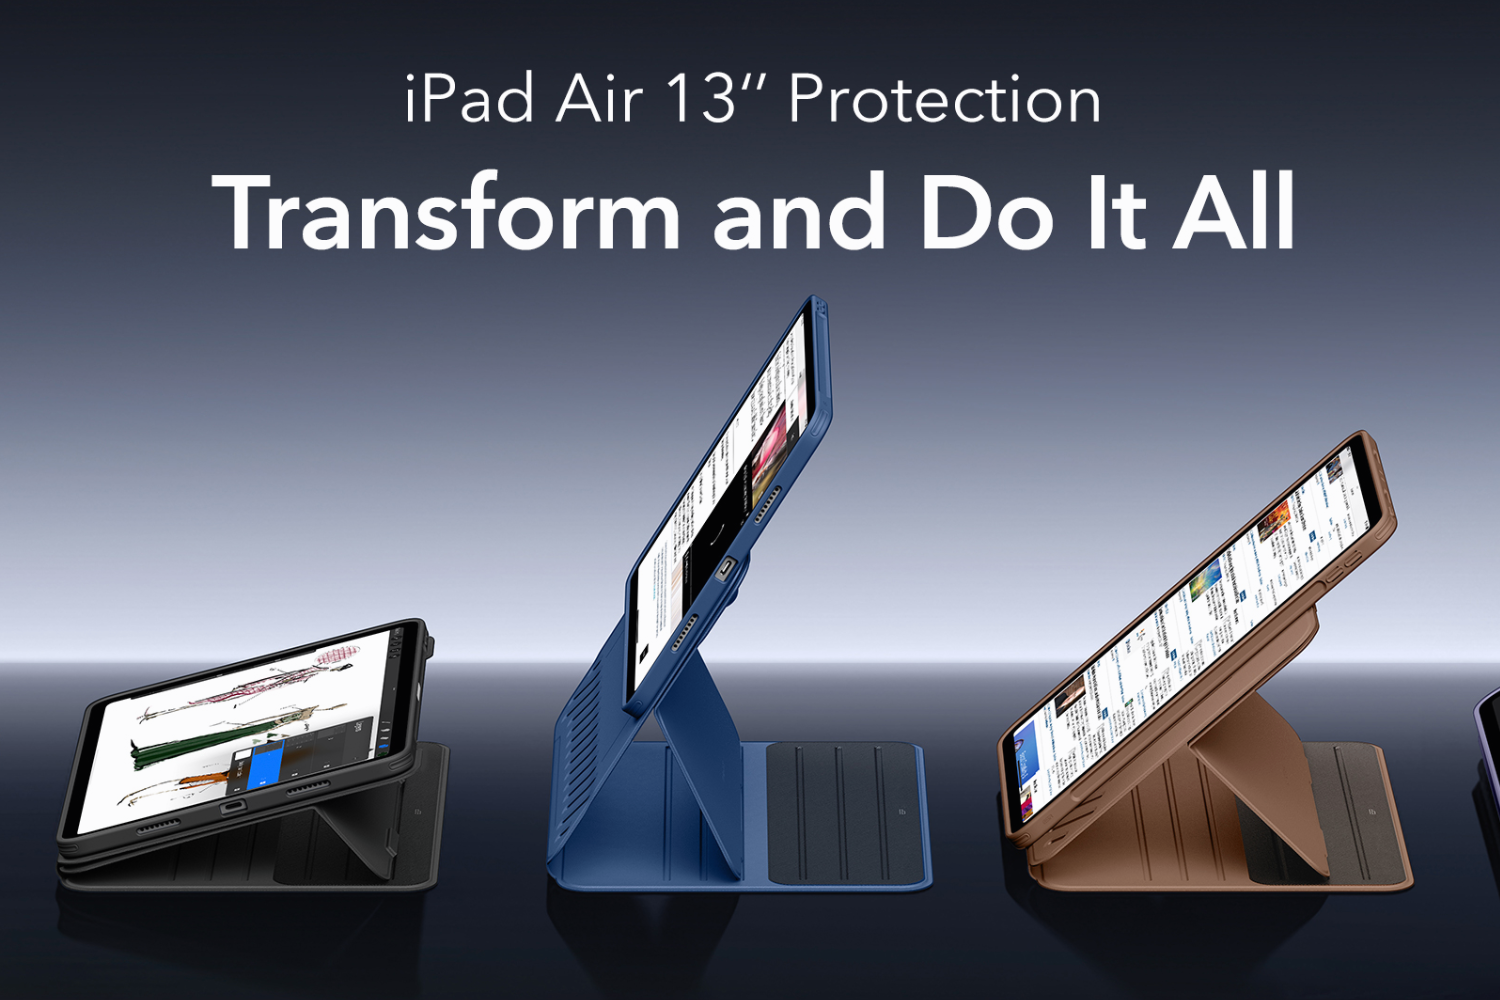 Image Credit–ESR - Kılıf üreticisi Apple'ın iddia edilen 12,9 inç iPad Air'i için halihazırda Amazon'da seçenekler sunuyor